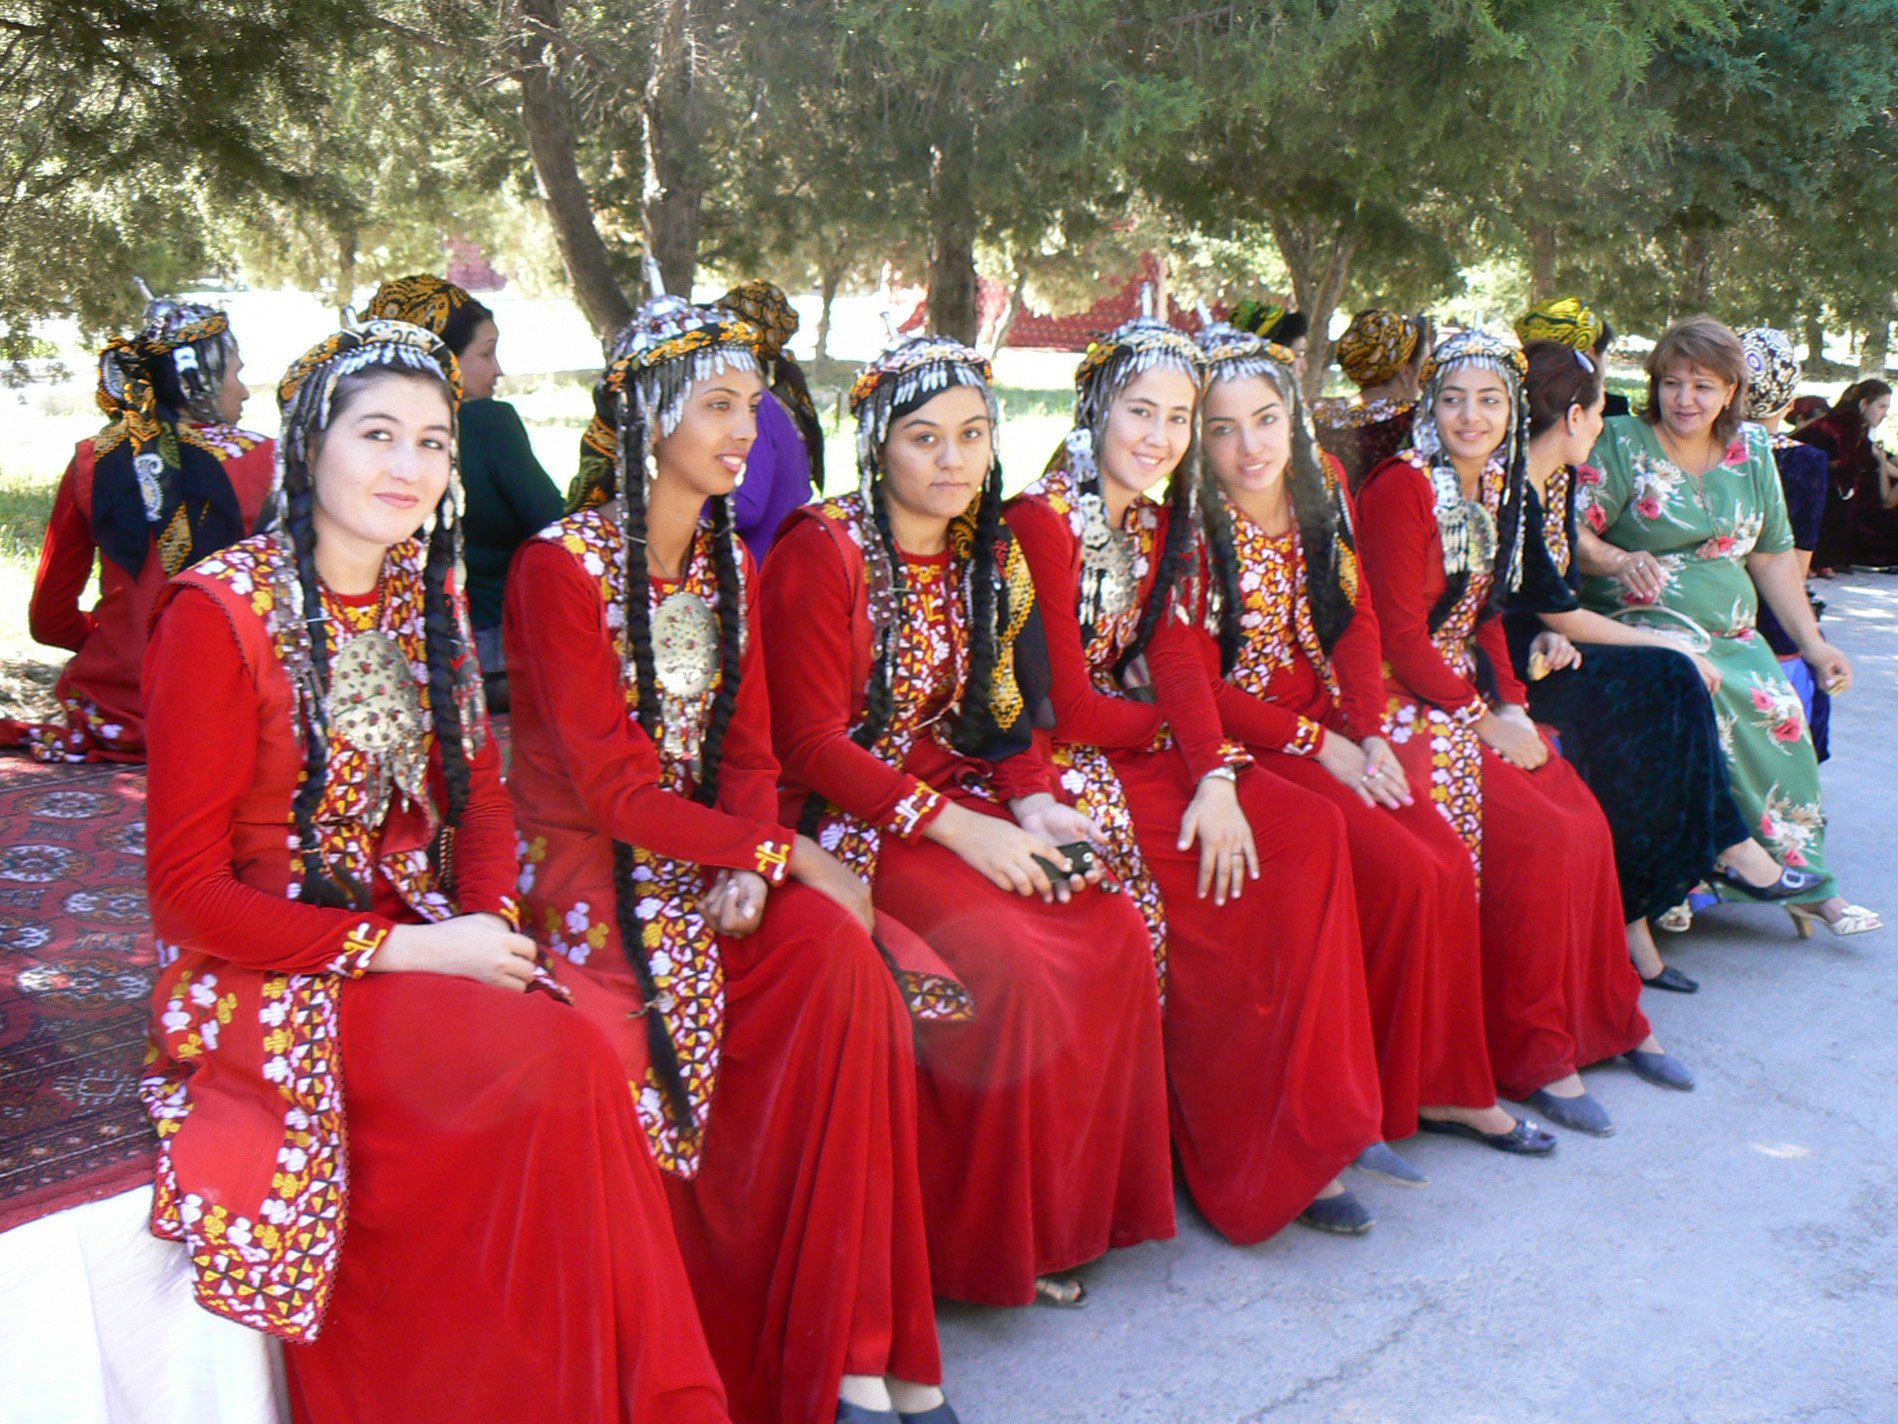 Туркменабад сегодня